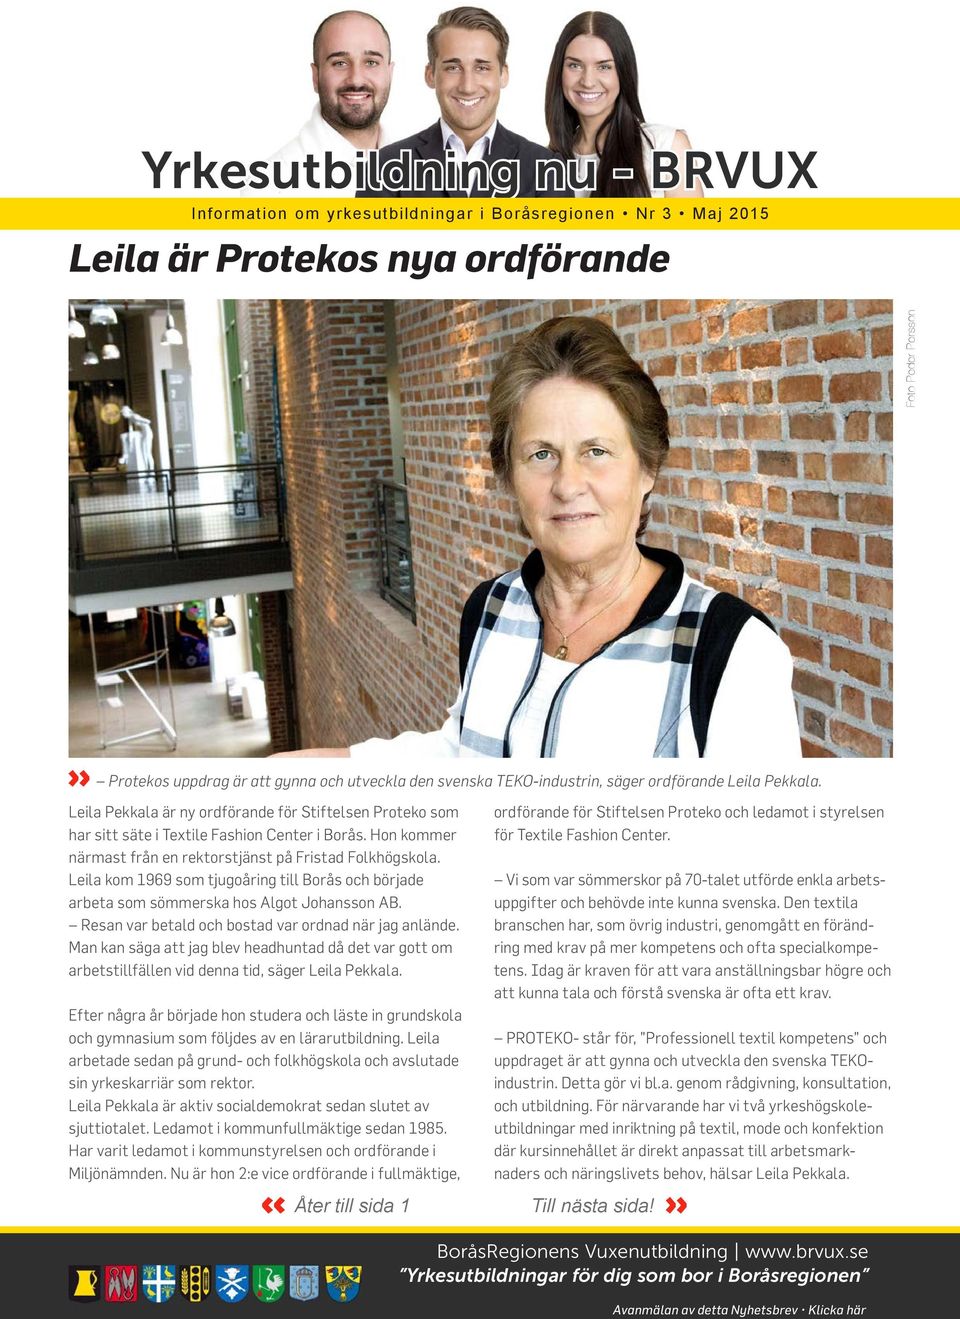 Leila kom 1969 som tjugoåring till Borås och började arbeta som sömmerska hos Algot Johansson AB. Resan var betald och bostad var ordnad när jag anlände.